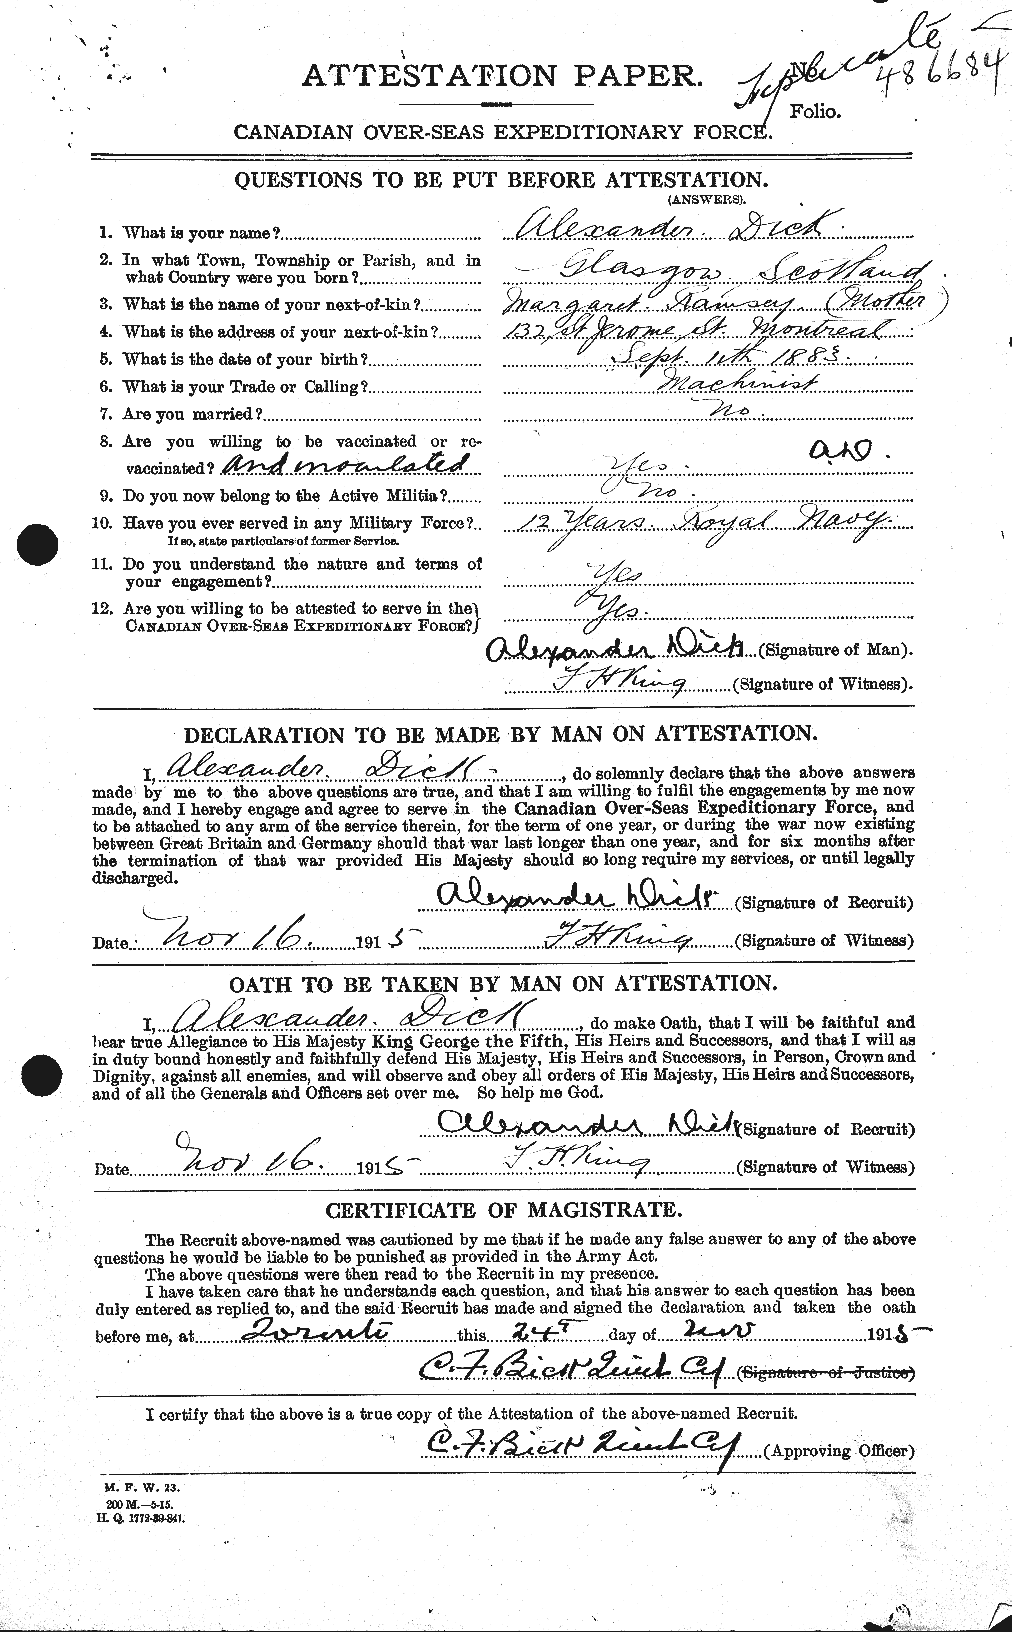 Dossiers du Personnel de la Première Guerre mondiale - CEC 294019a